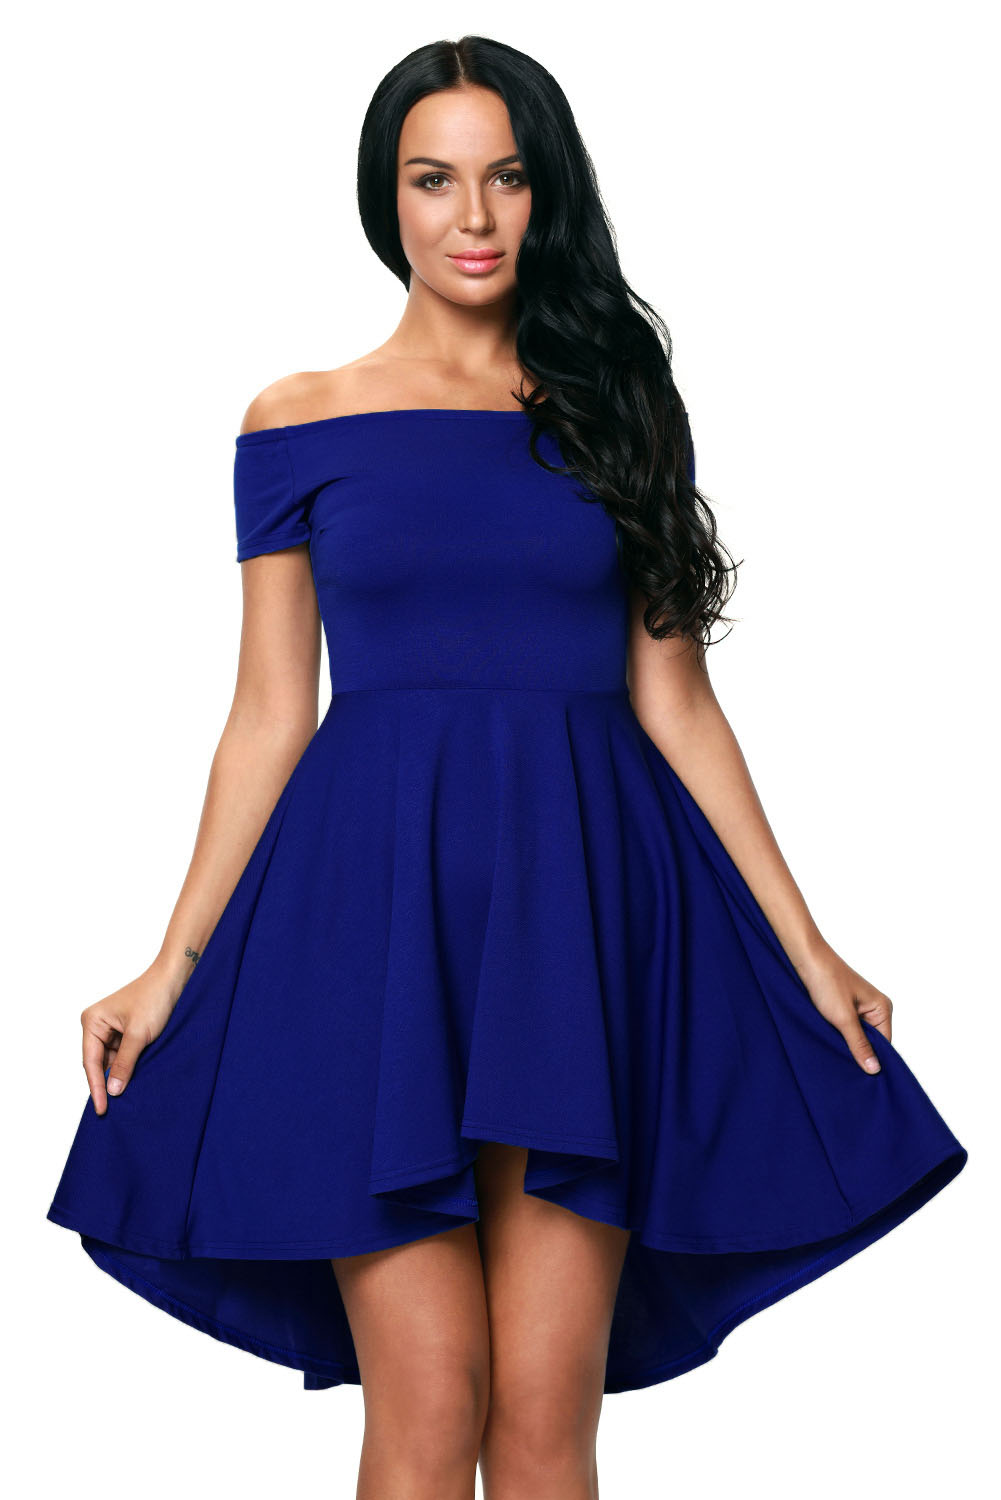 women in blue dress